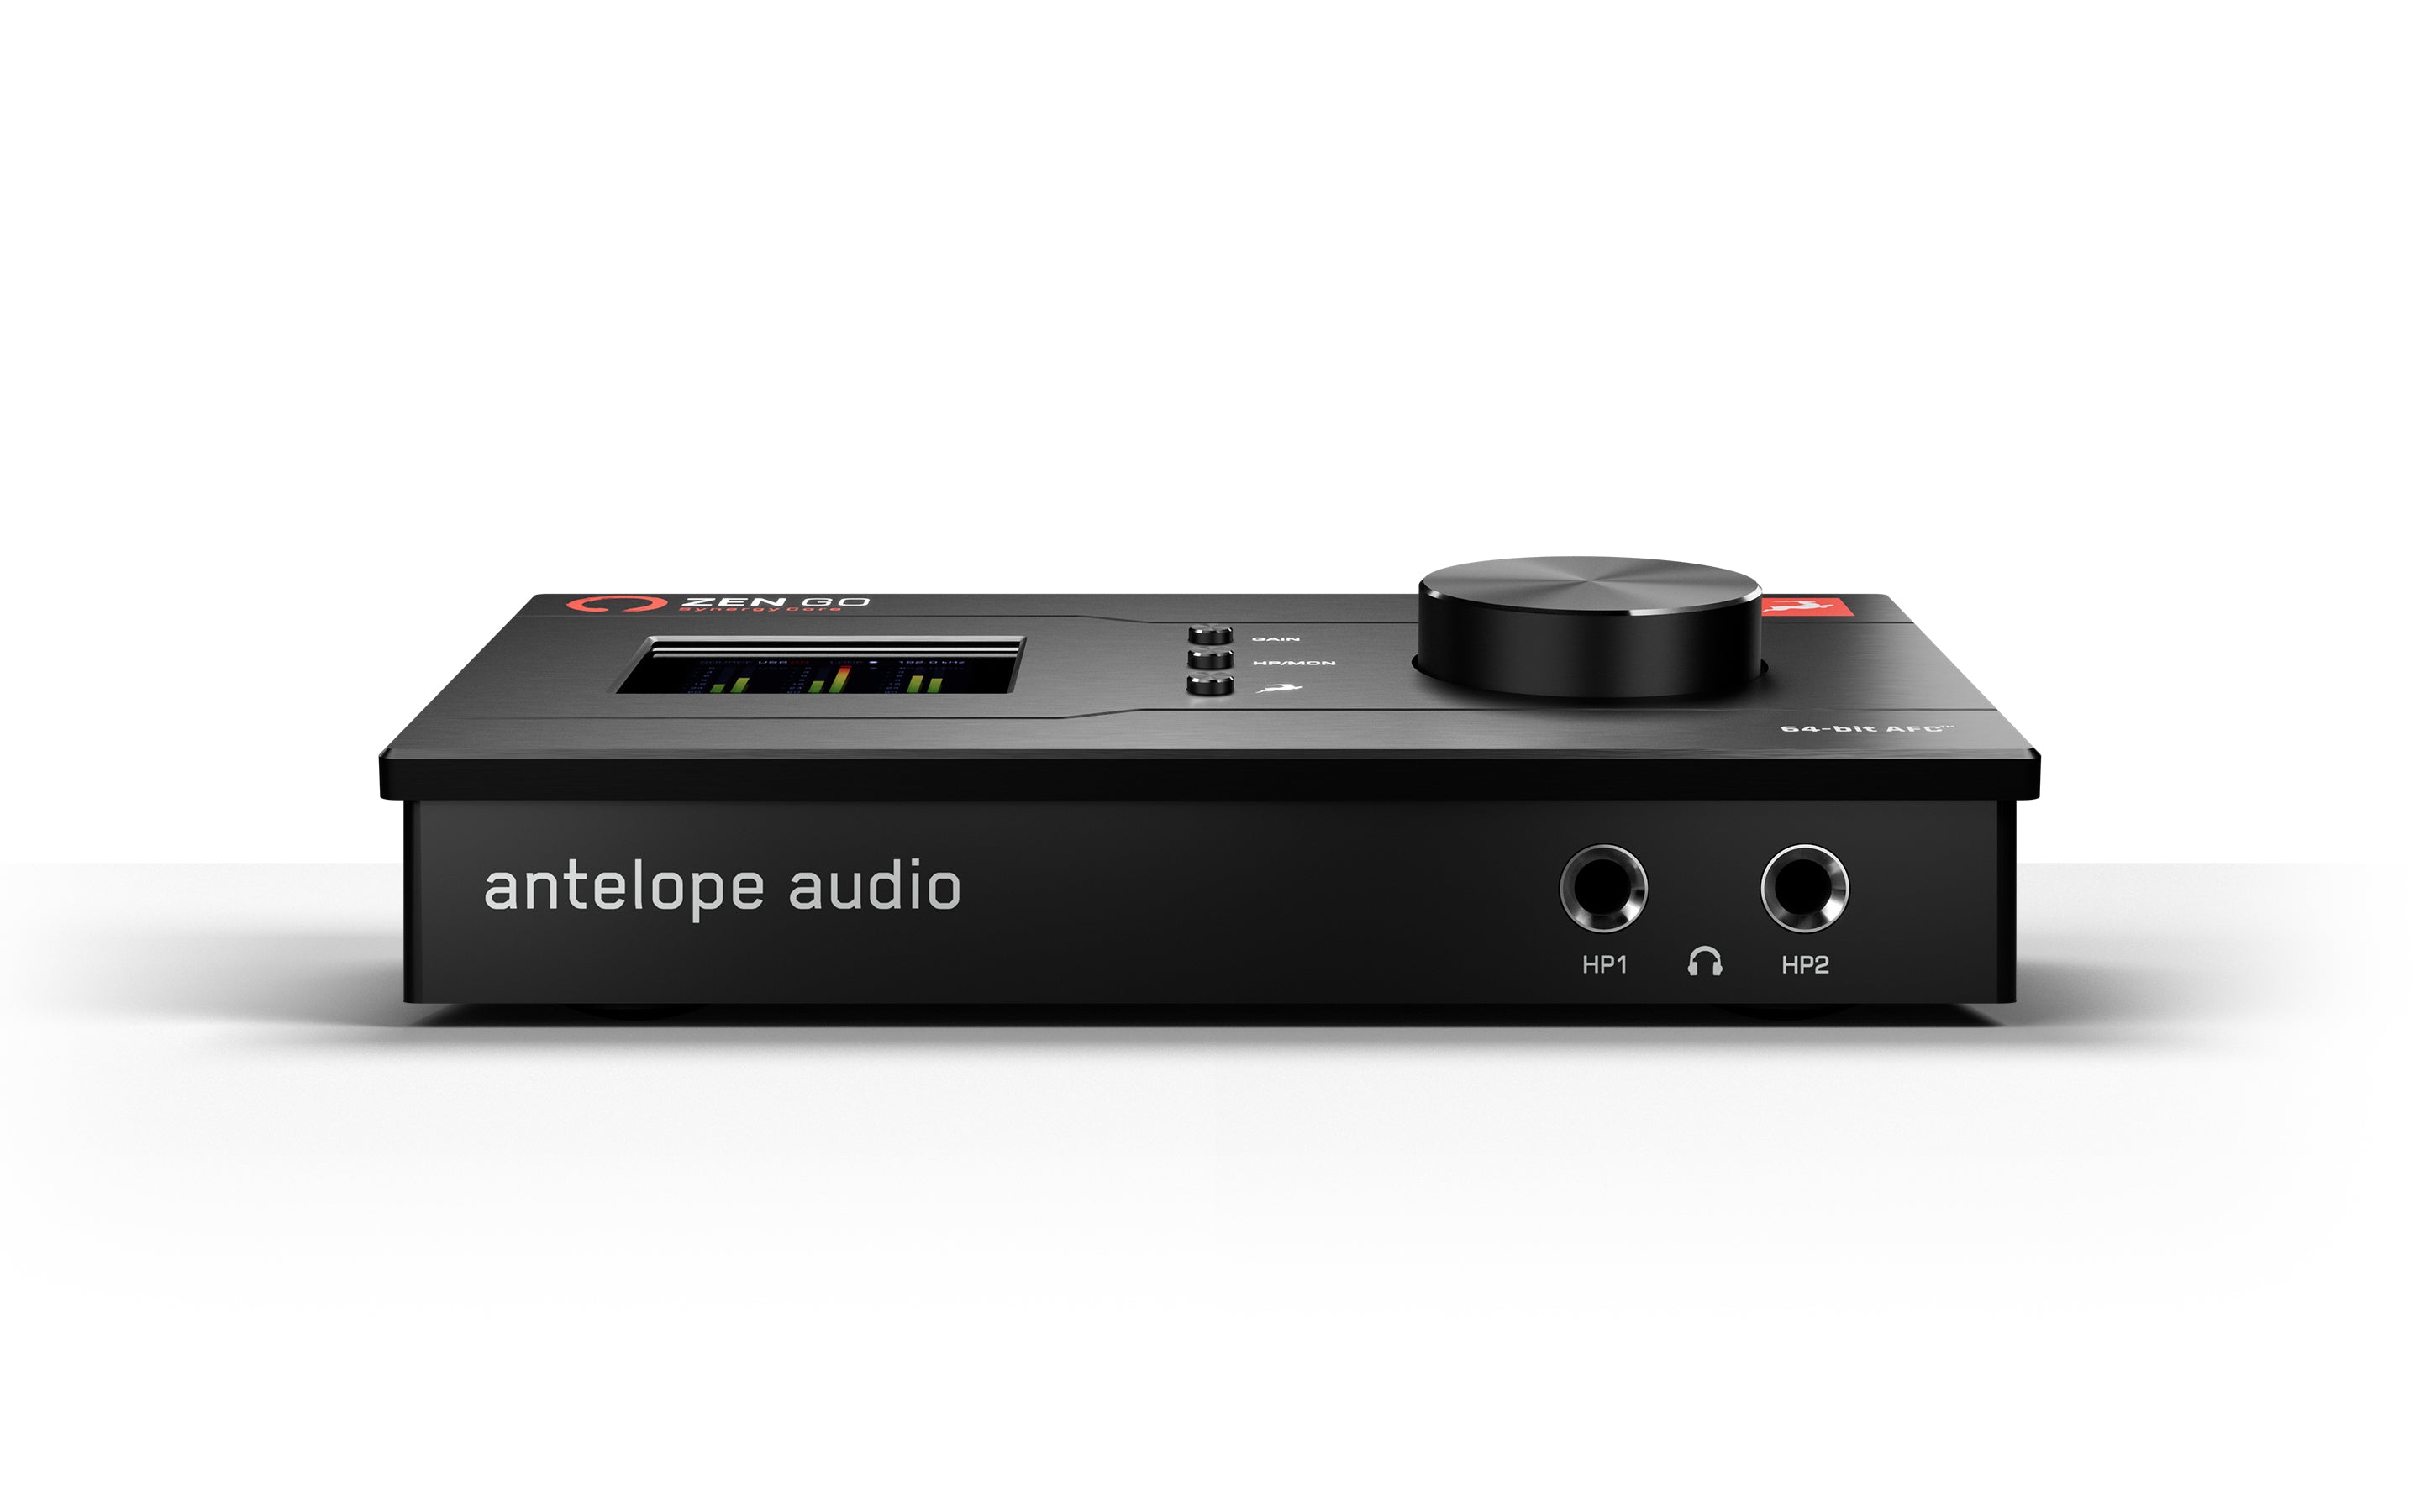 Antelope Audio Zen Go Synergy Core - Professional Audio Design, Inc